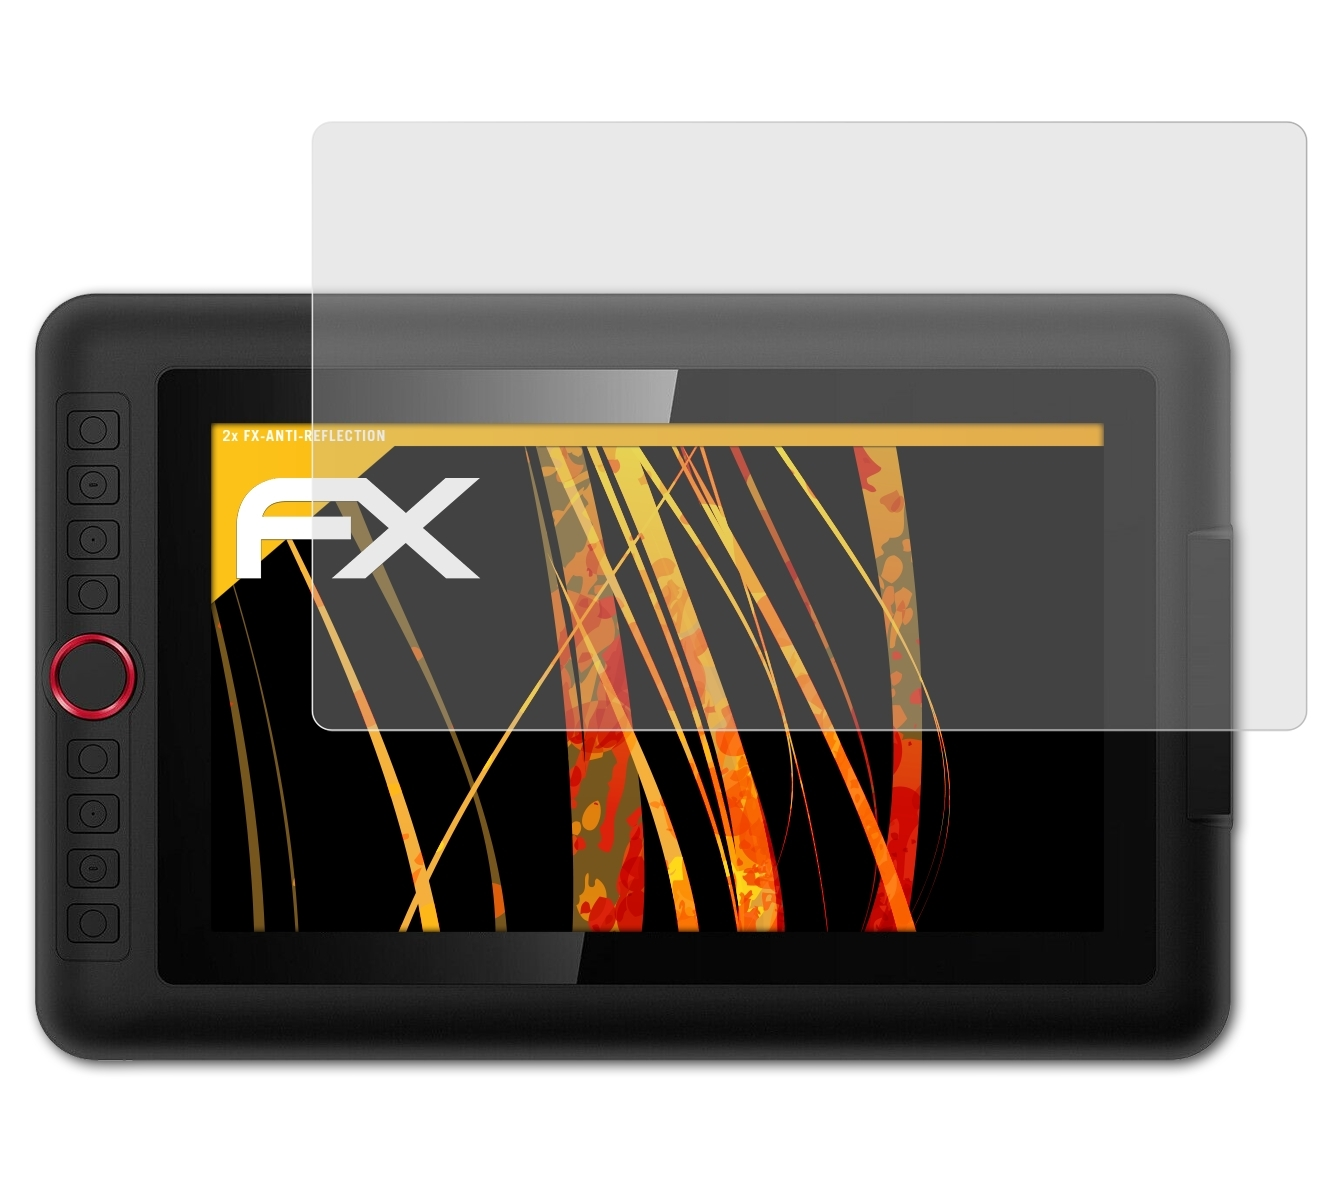 12 XP-PEN Pro) Artist Displayschutz(für ATFOLIX 2x FX-Antireflex